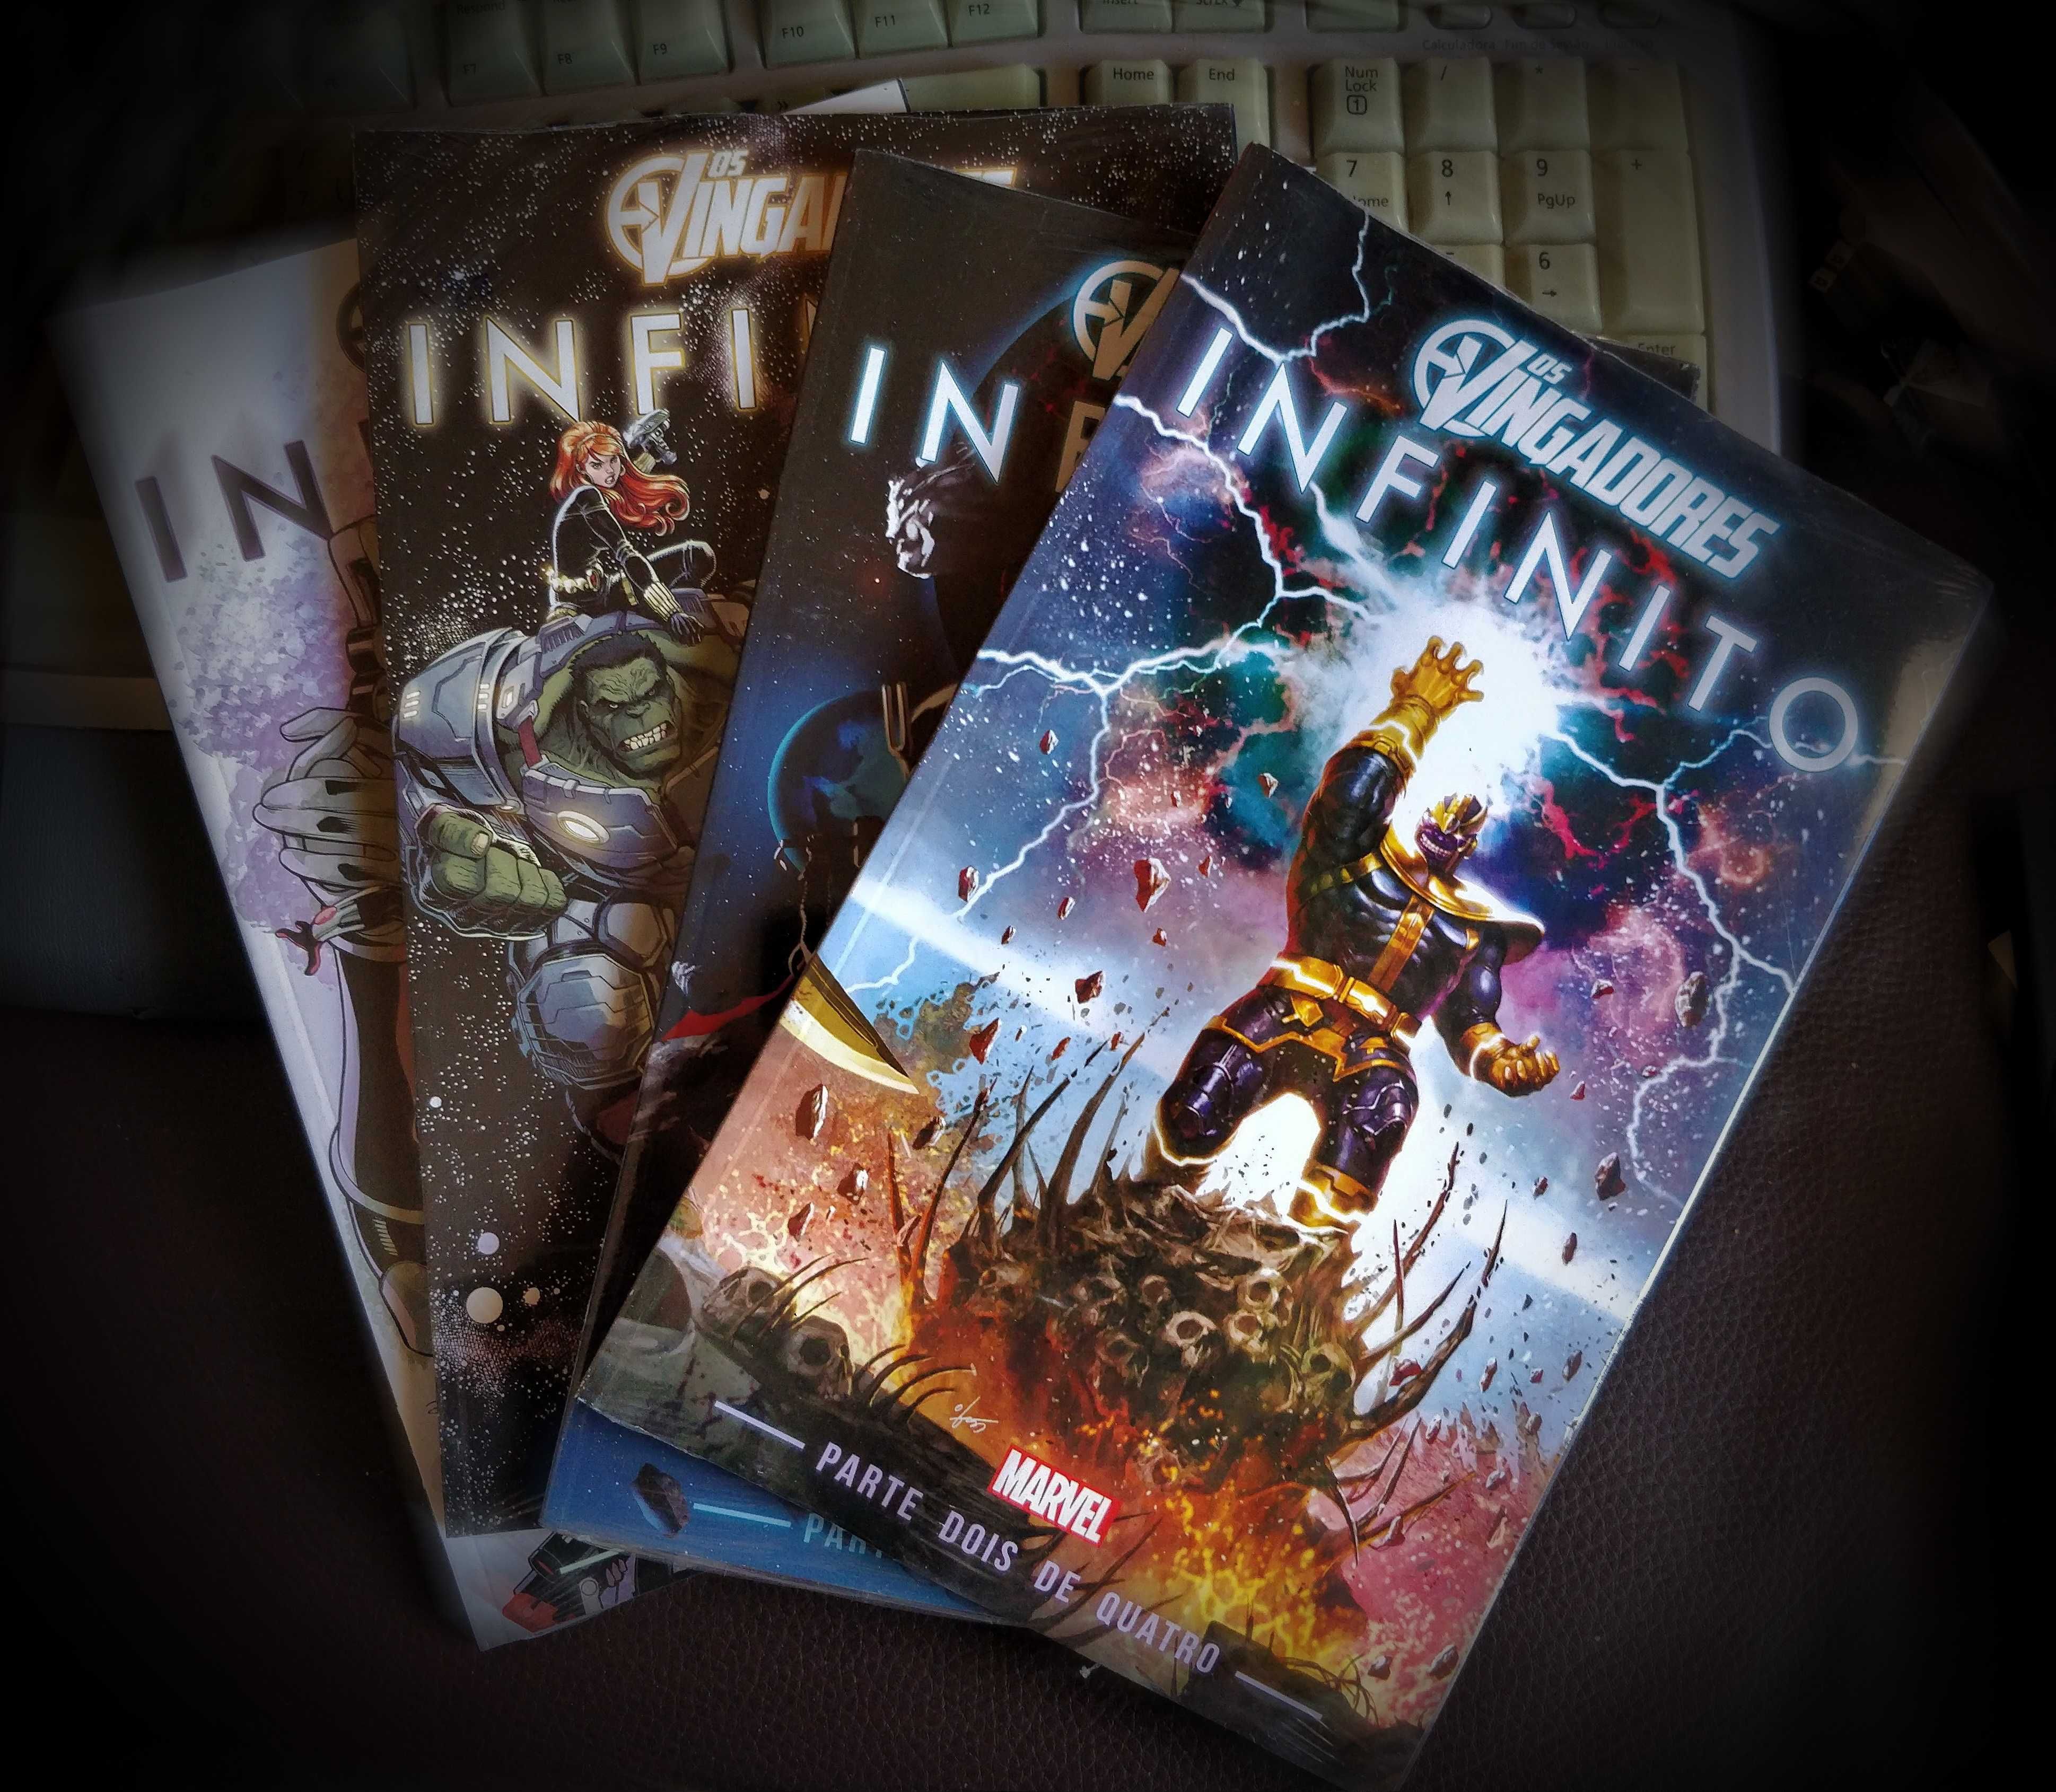 Marvel Os Vingadores - Infinito, Serie completa (4 volumes novos)